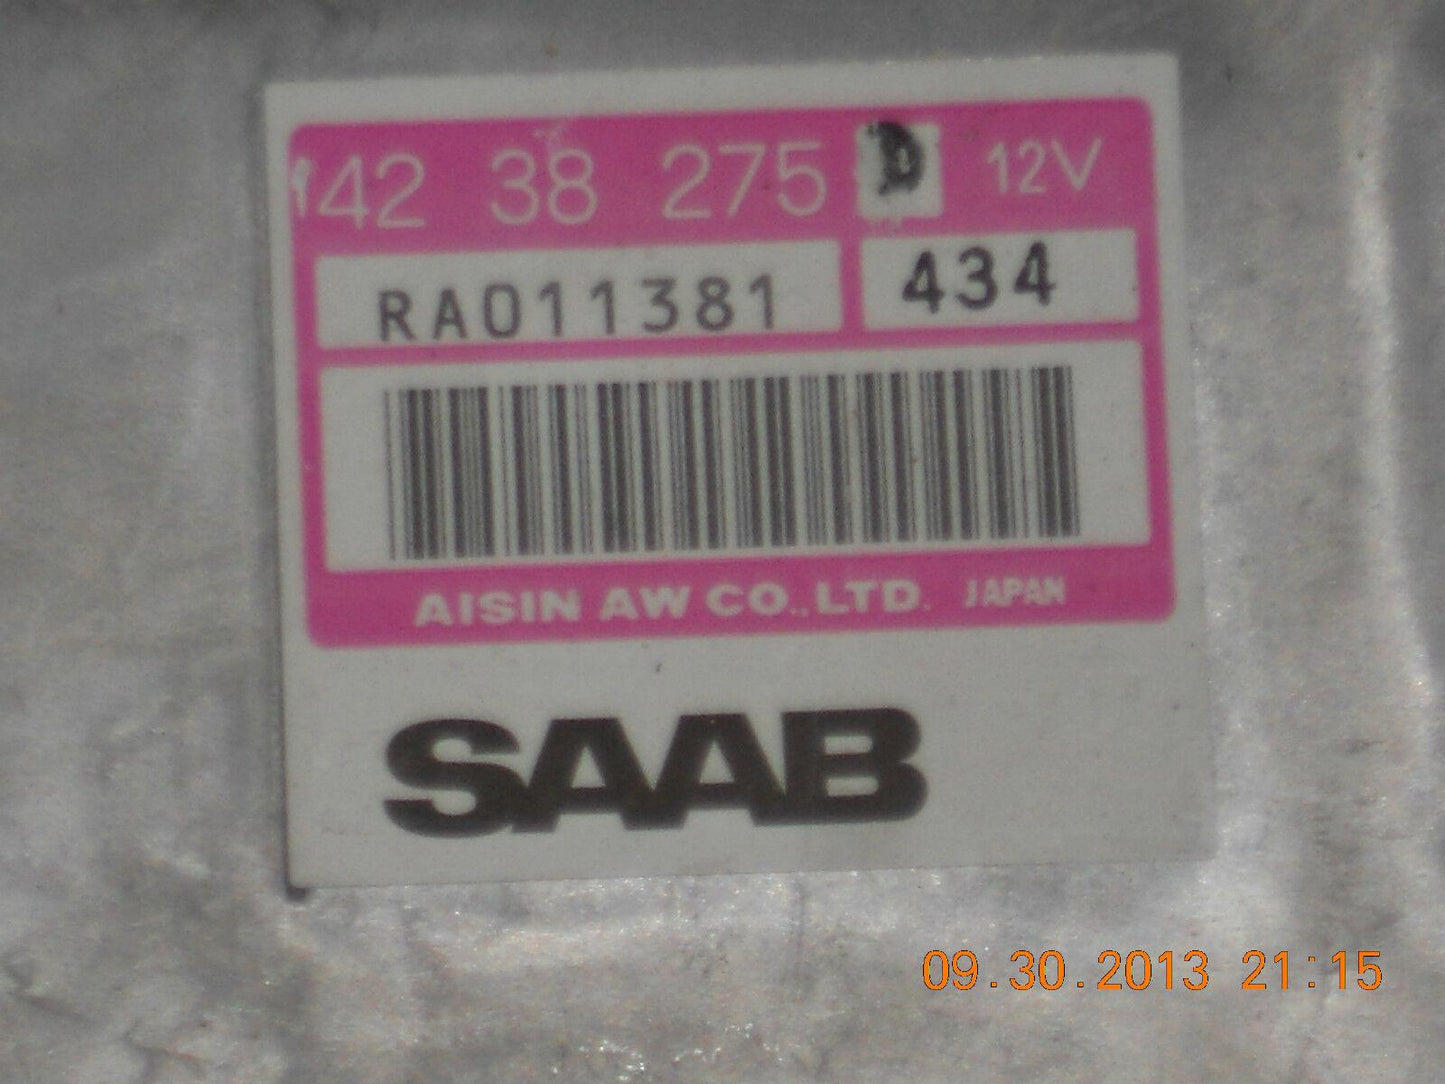 1994-1995 Saab 900 tcm computer 42 38 275.